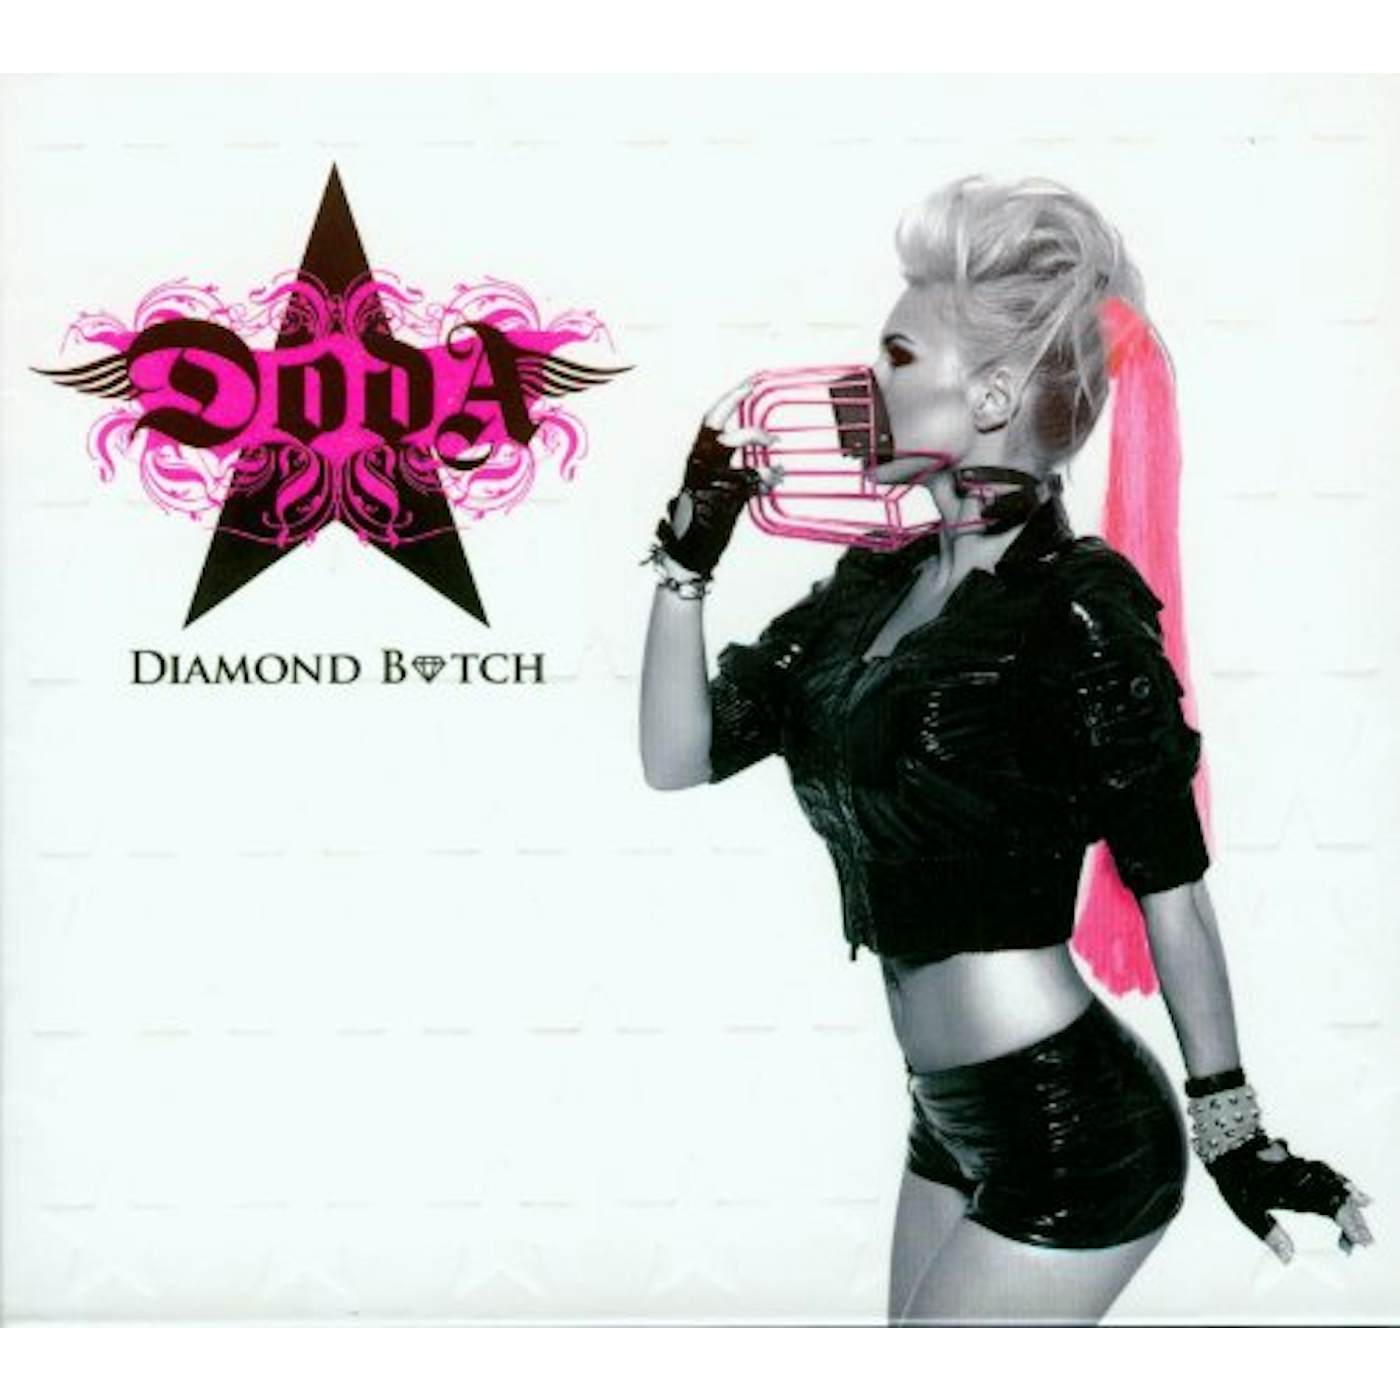 Doda DIAMOND B*TCH CD